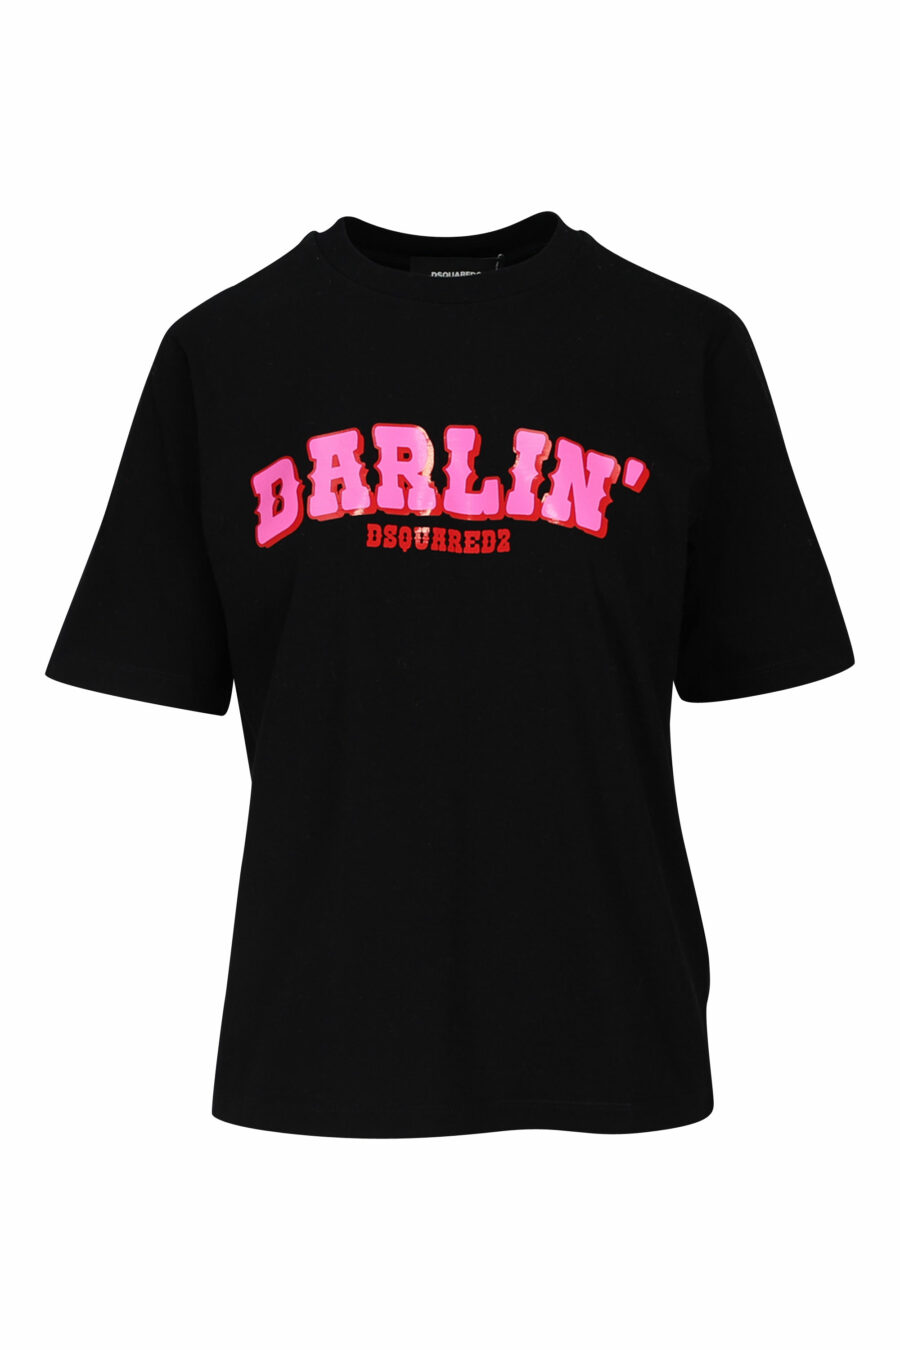 Camiseta negra con maxilogo "darlin" fucsia - 8054148193522